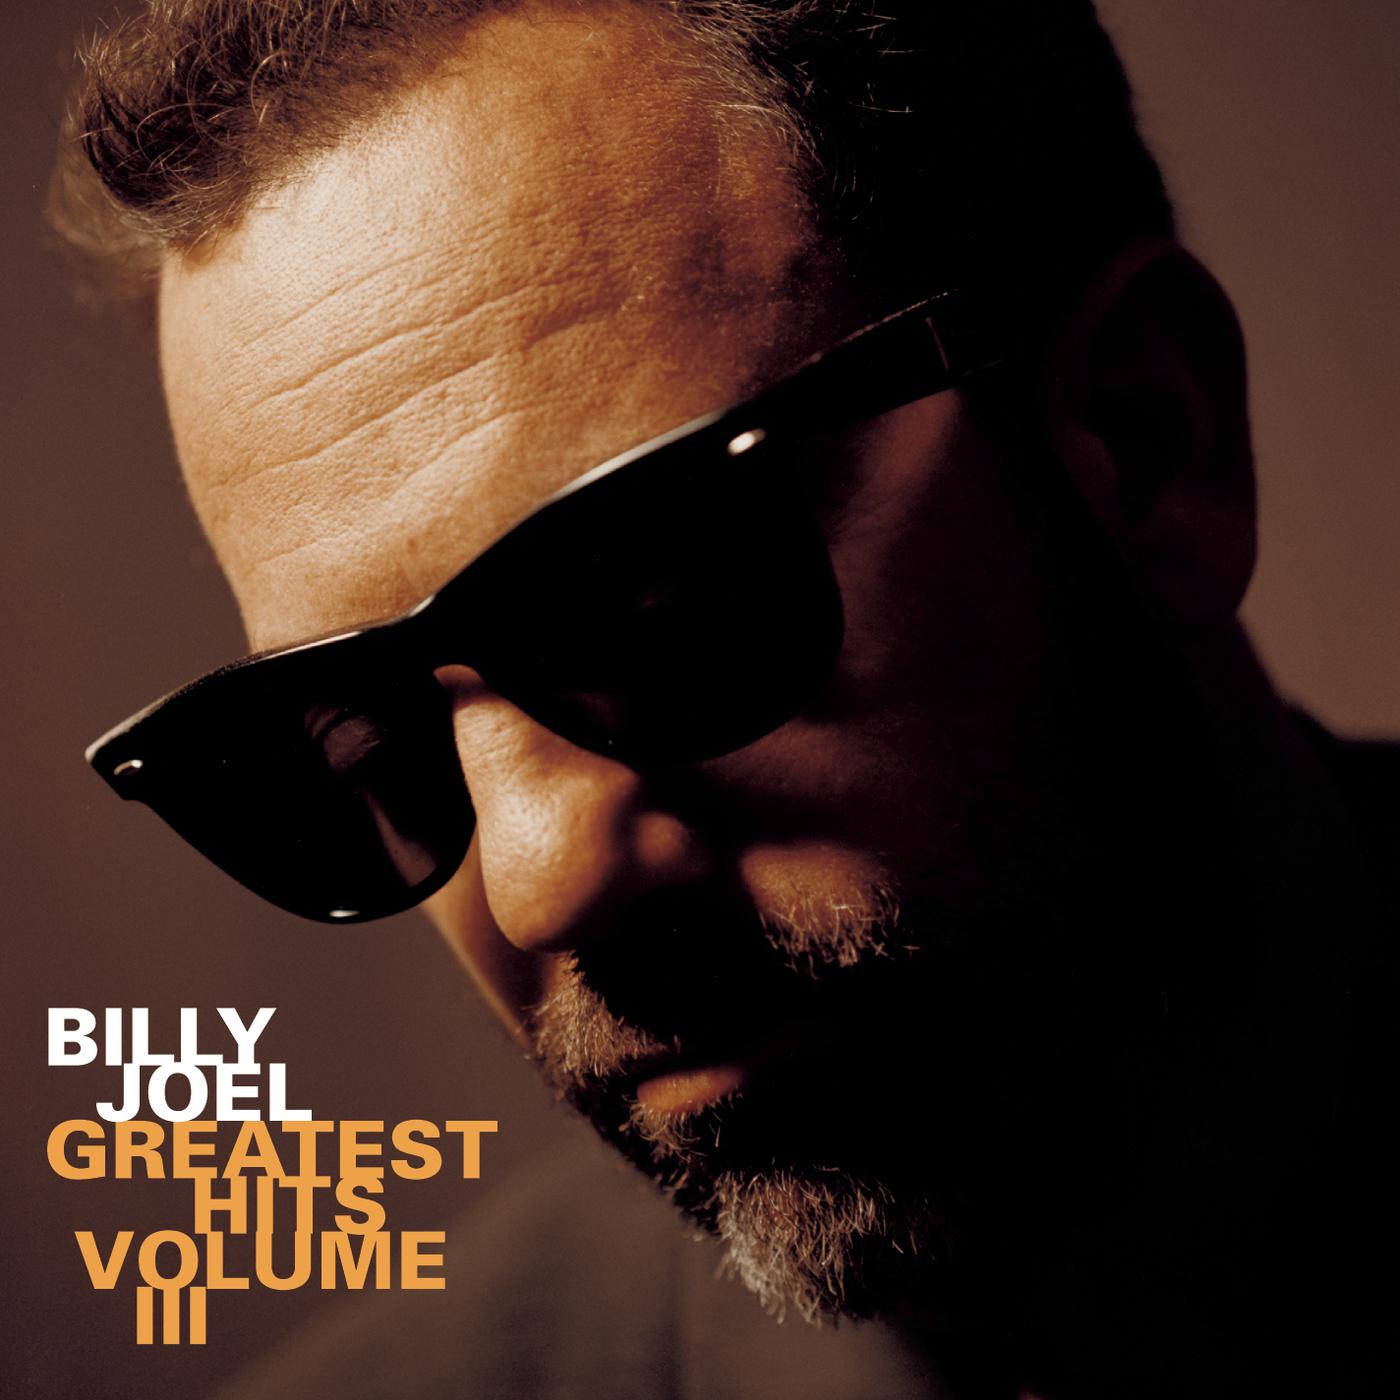 Matter of trust billy. Billy Joel 1997 - Greatest Hits Volume III. Billy Джоэл. Greatest Hits Vol. III Billy Joel. Billy Joel Greatest Hits Vol. 3 винил.